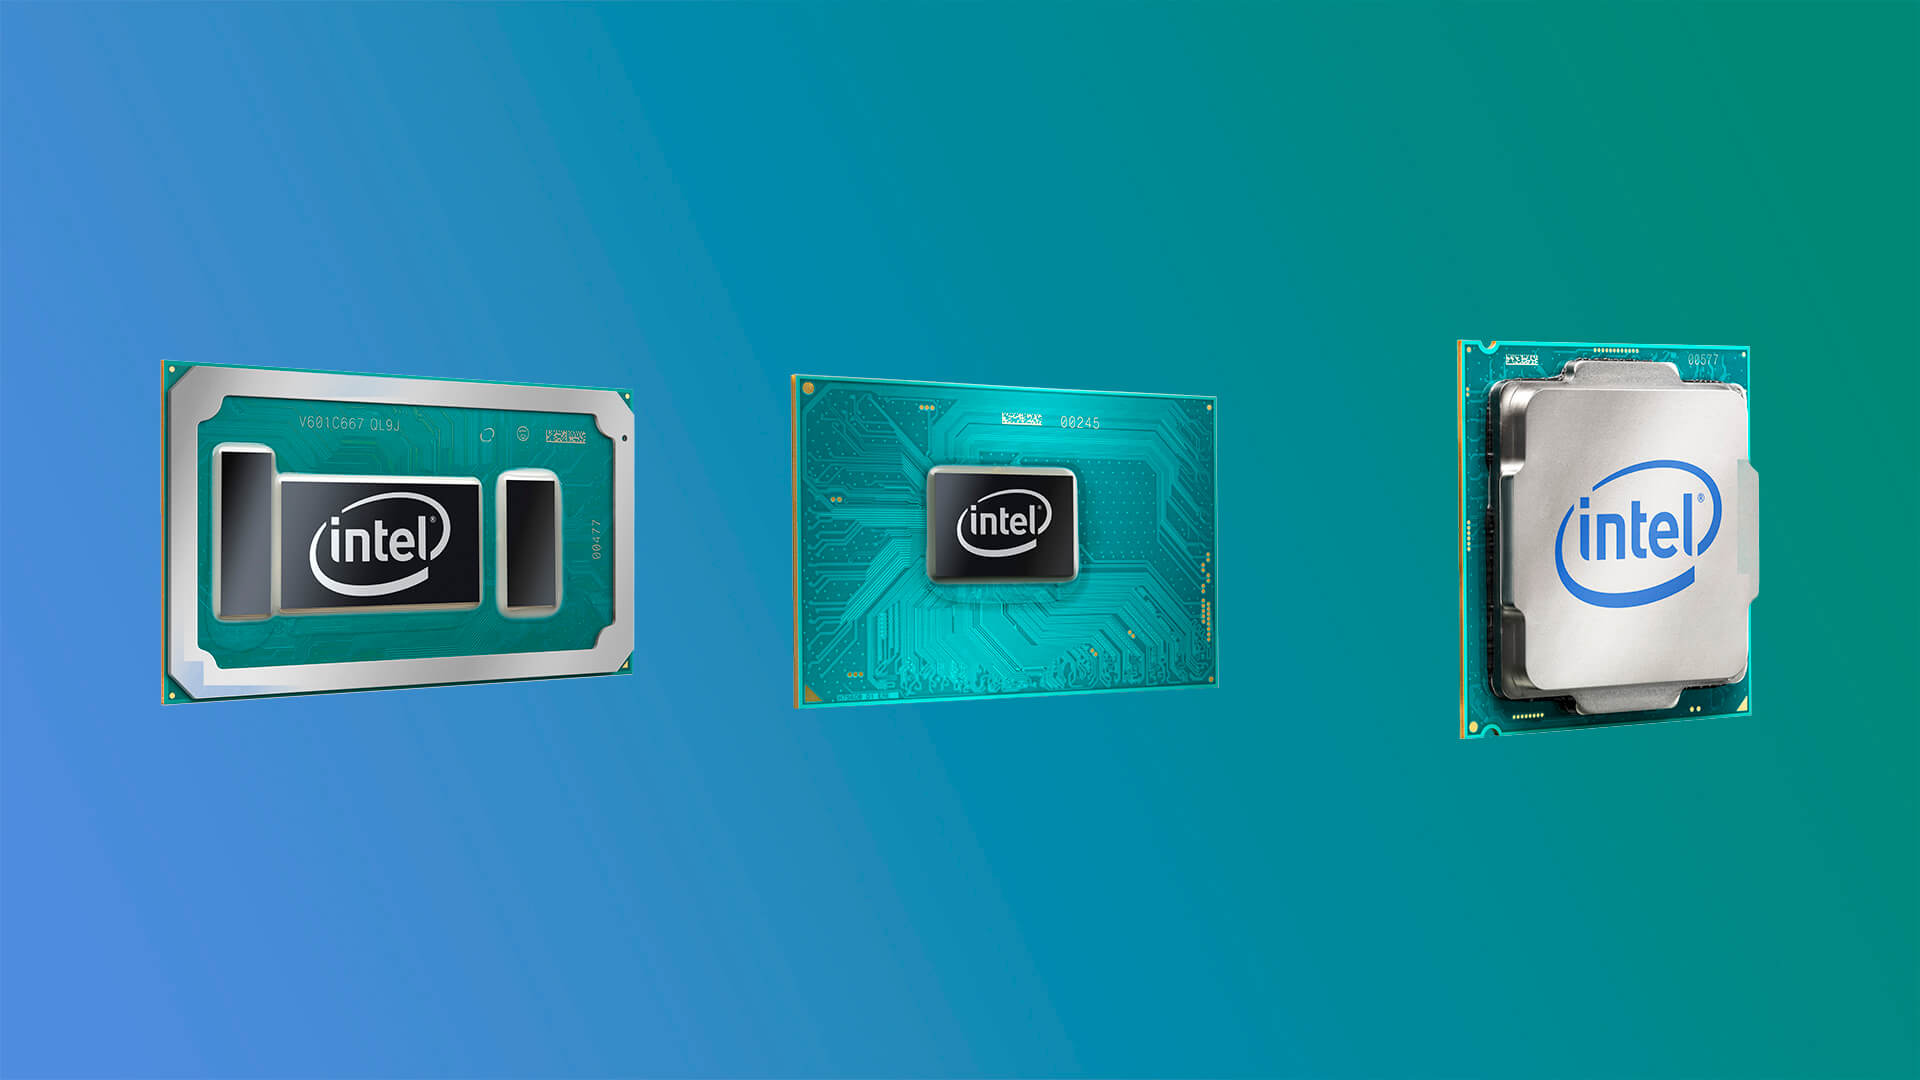 Графическое ядро Intel Iris Plus Graphics 940 выдаёт производительность на уровне GPU Vega 11